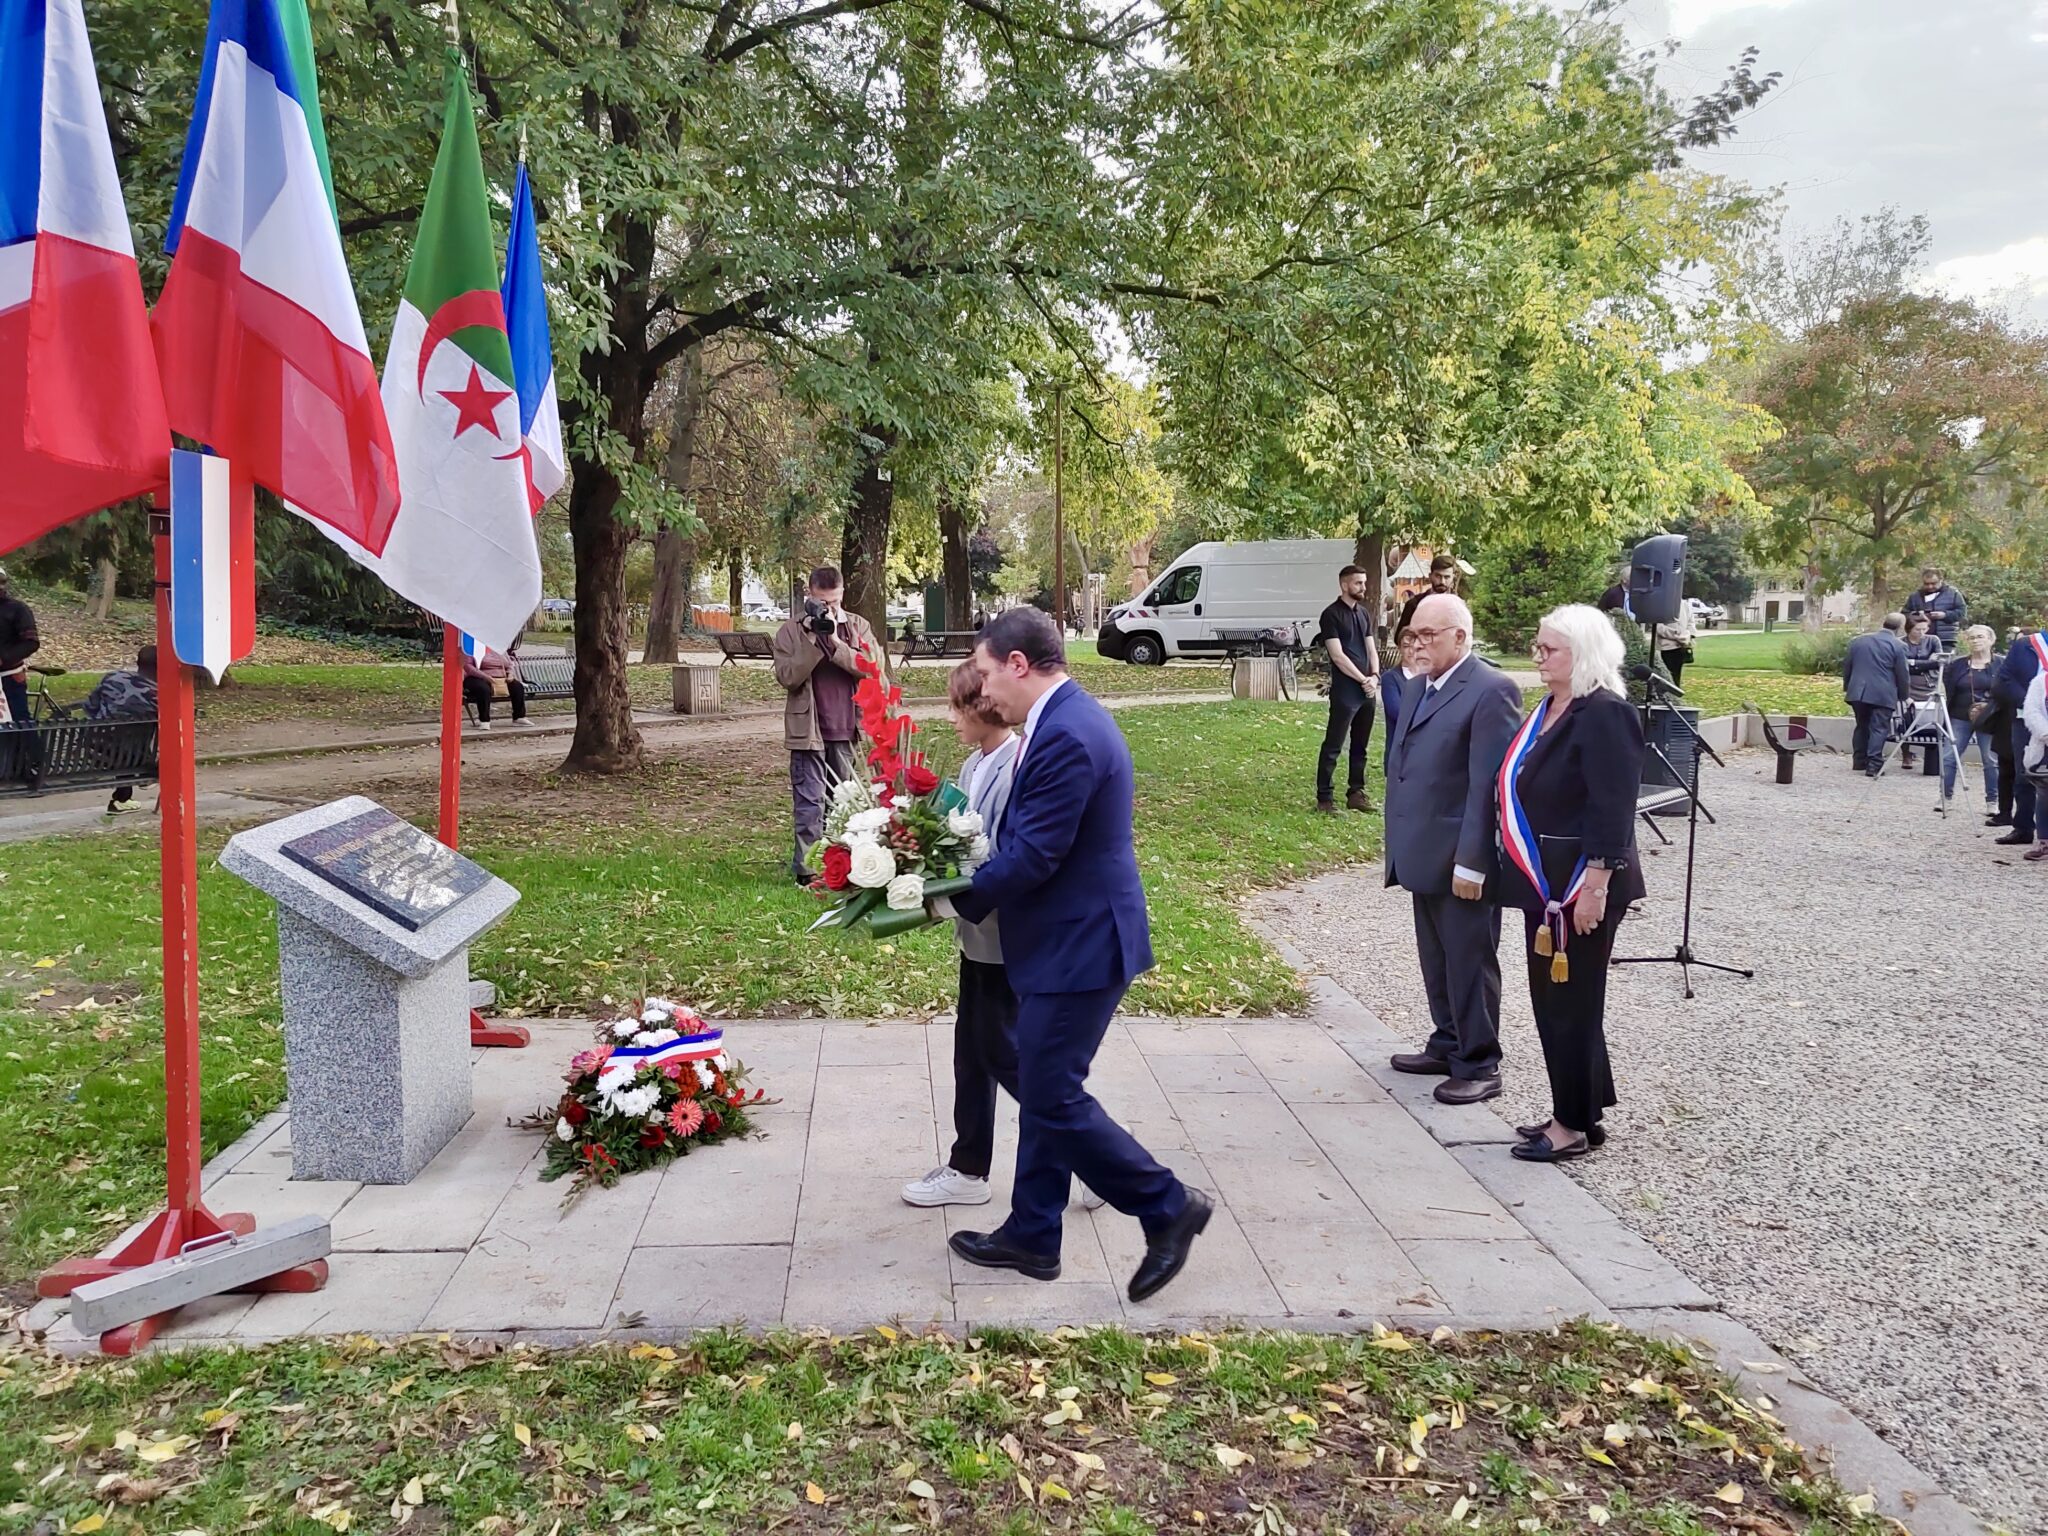 Le Consulat général d’Algérie à Lyon, diverses associations et élus ont rendu hommage aux victimes.